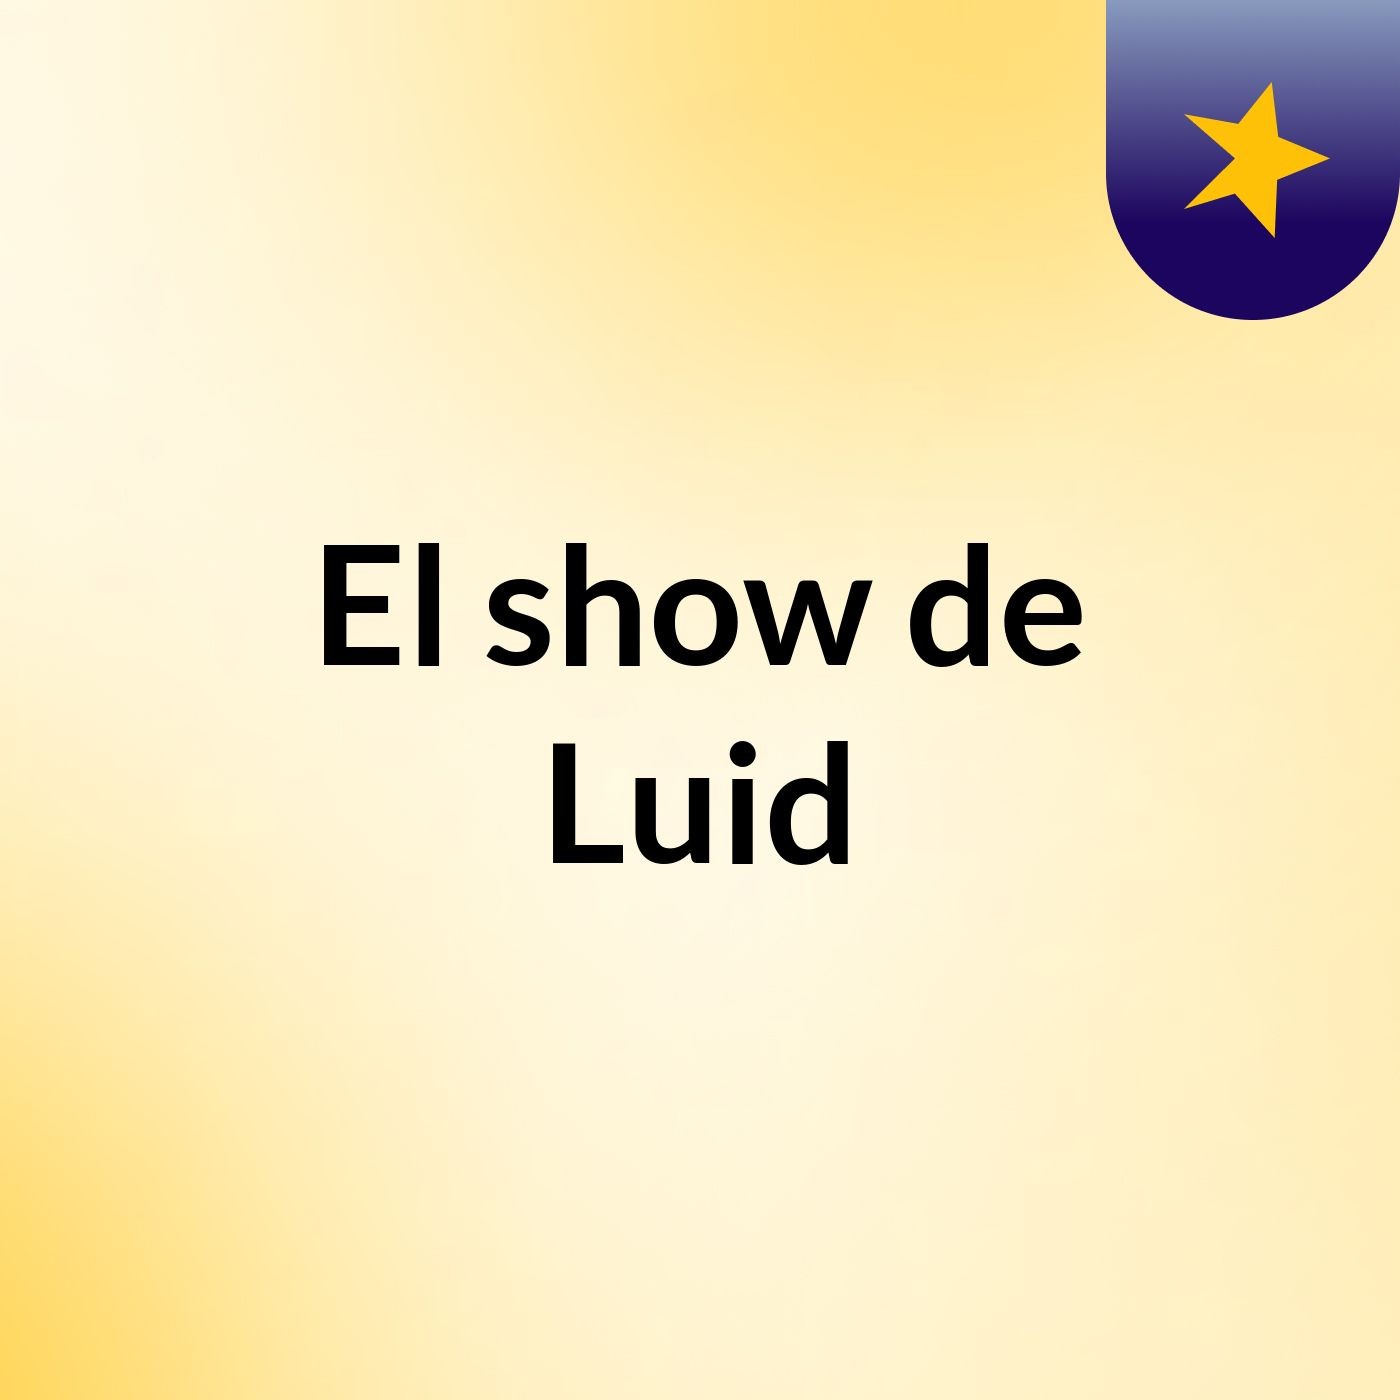 El show de Luid